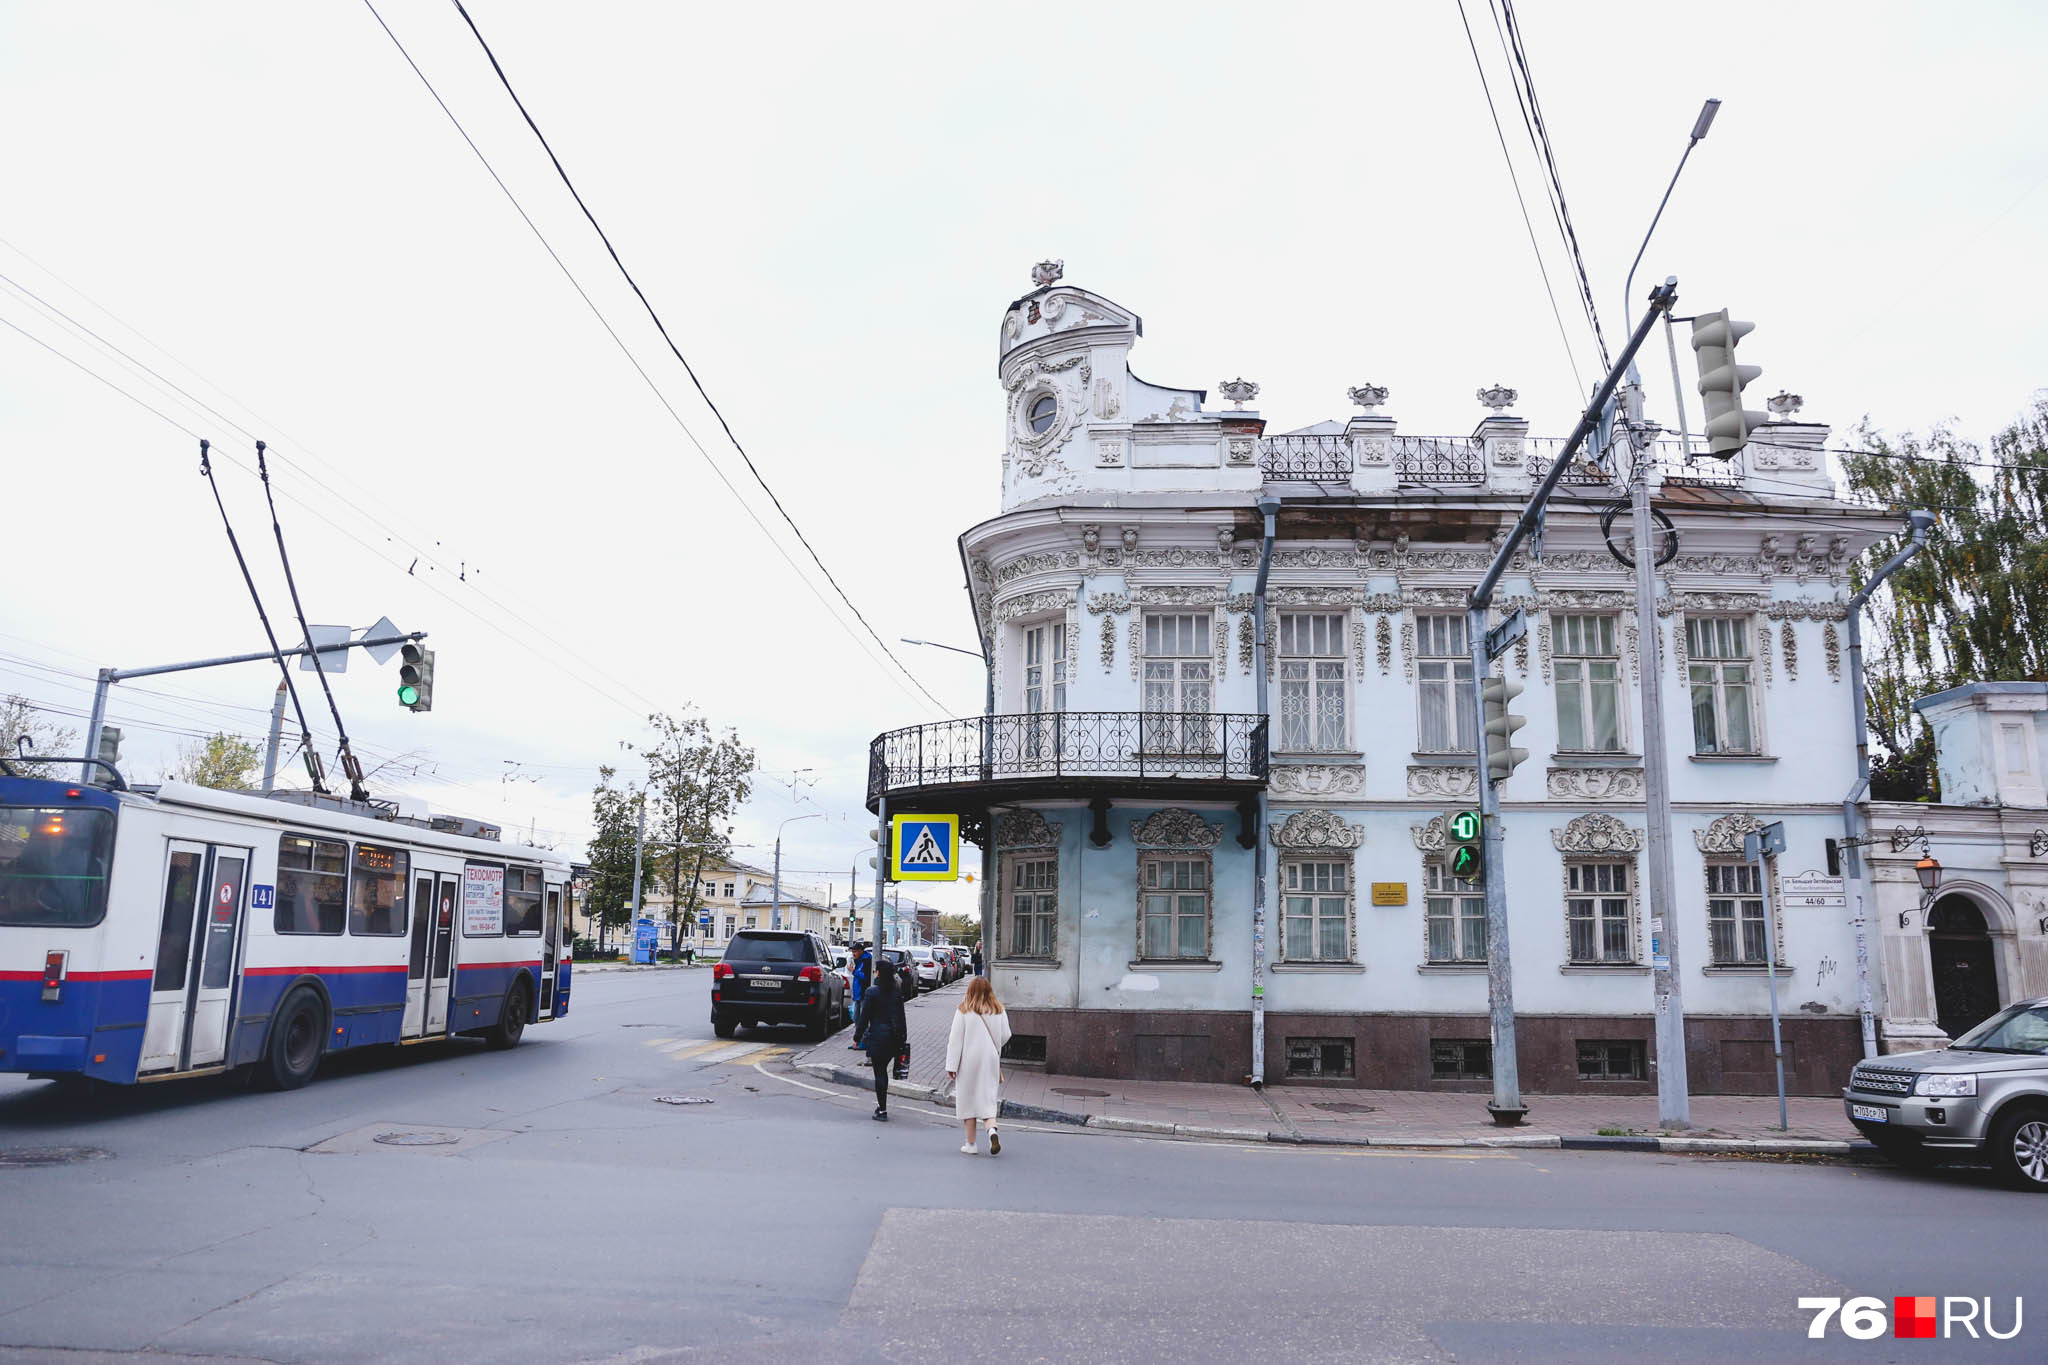 Здание — бывшее домовладение ярославских купеческих семей Донцовых и Лопатиных